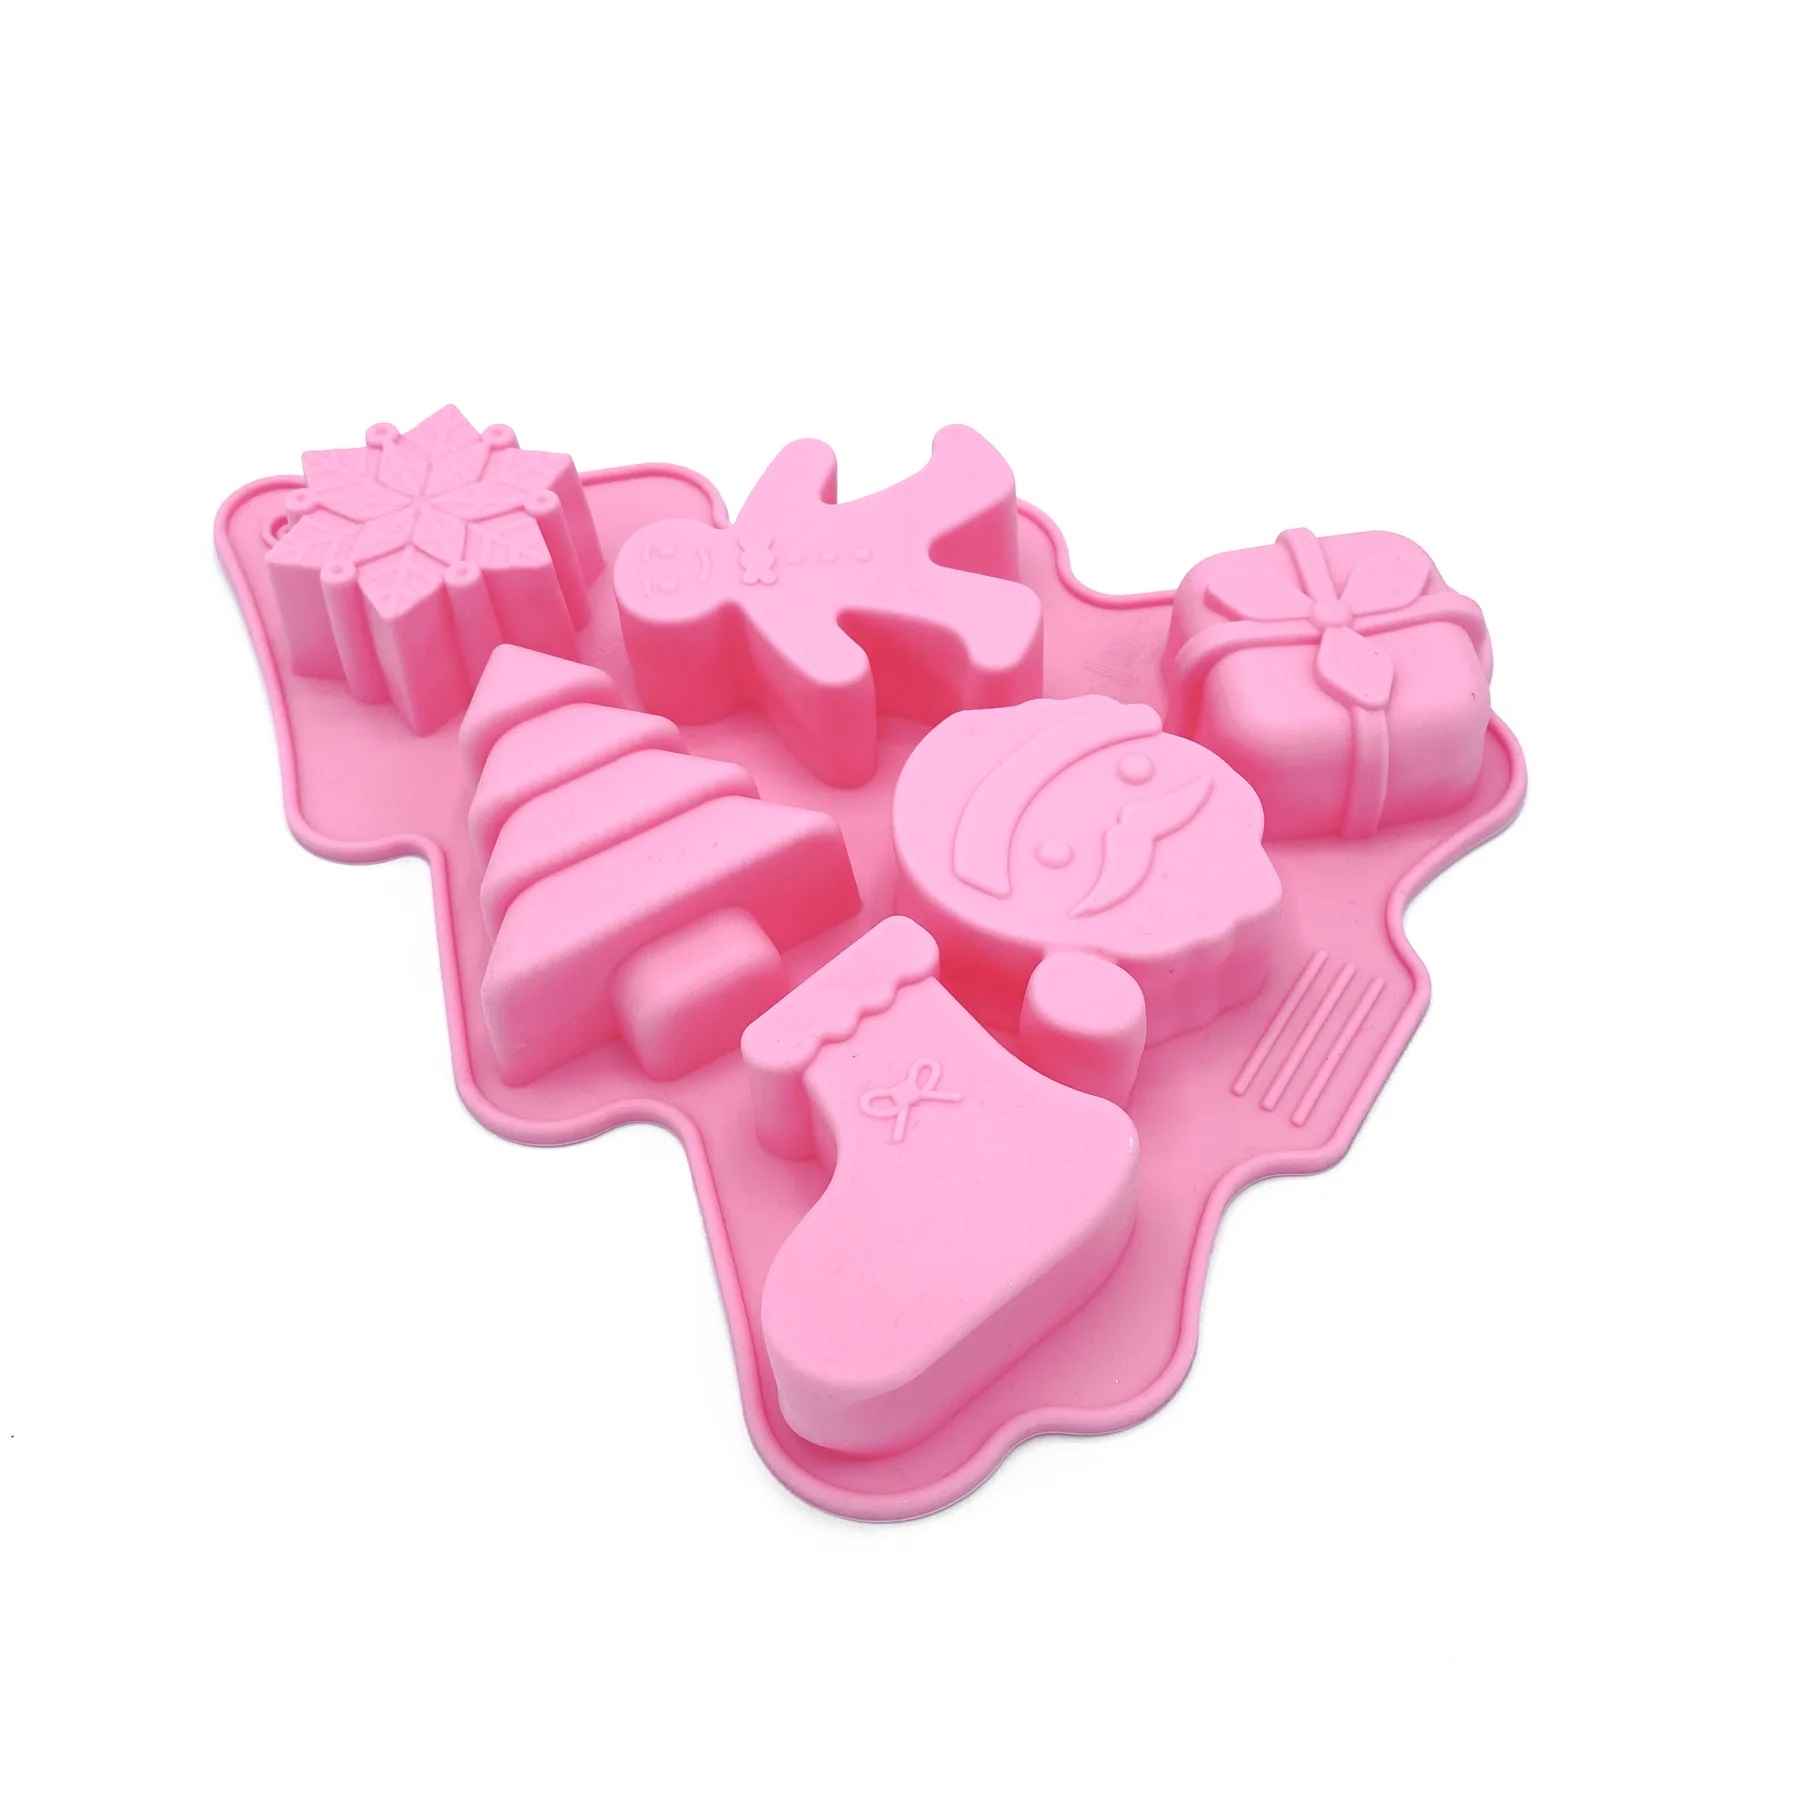 Imagen de producto: https://tienda.postreadiccion.com/img/articulos/secundarias14707-molde-de-silicona-happy-x-mas-happy-sprinkles-1.jpg